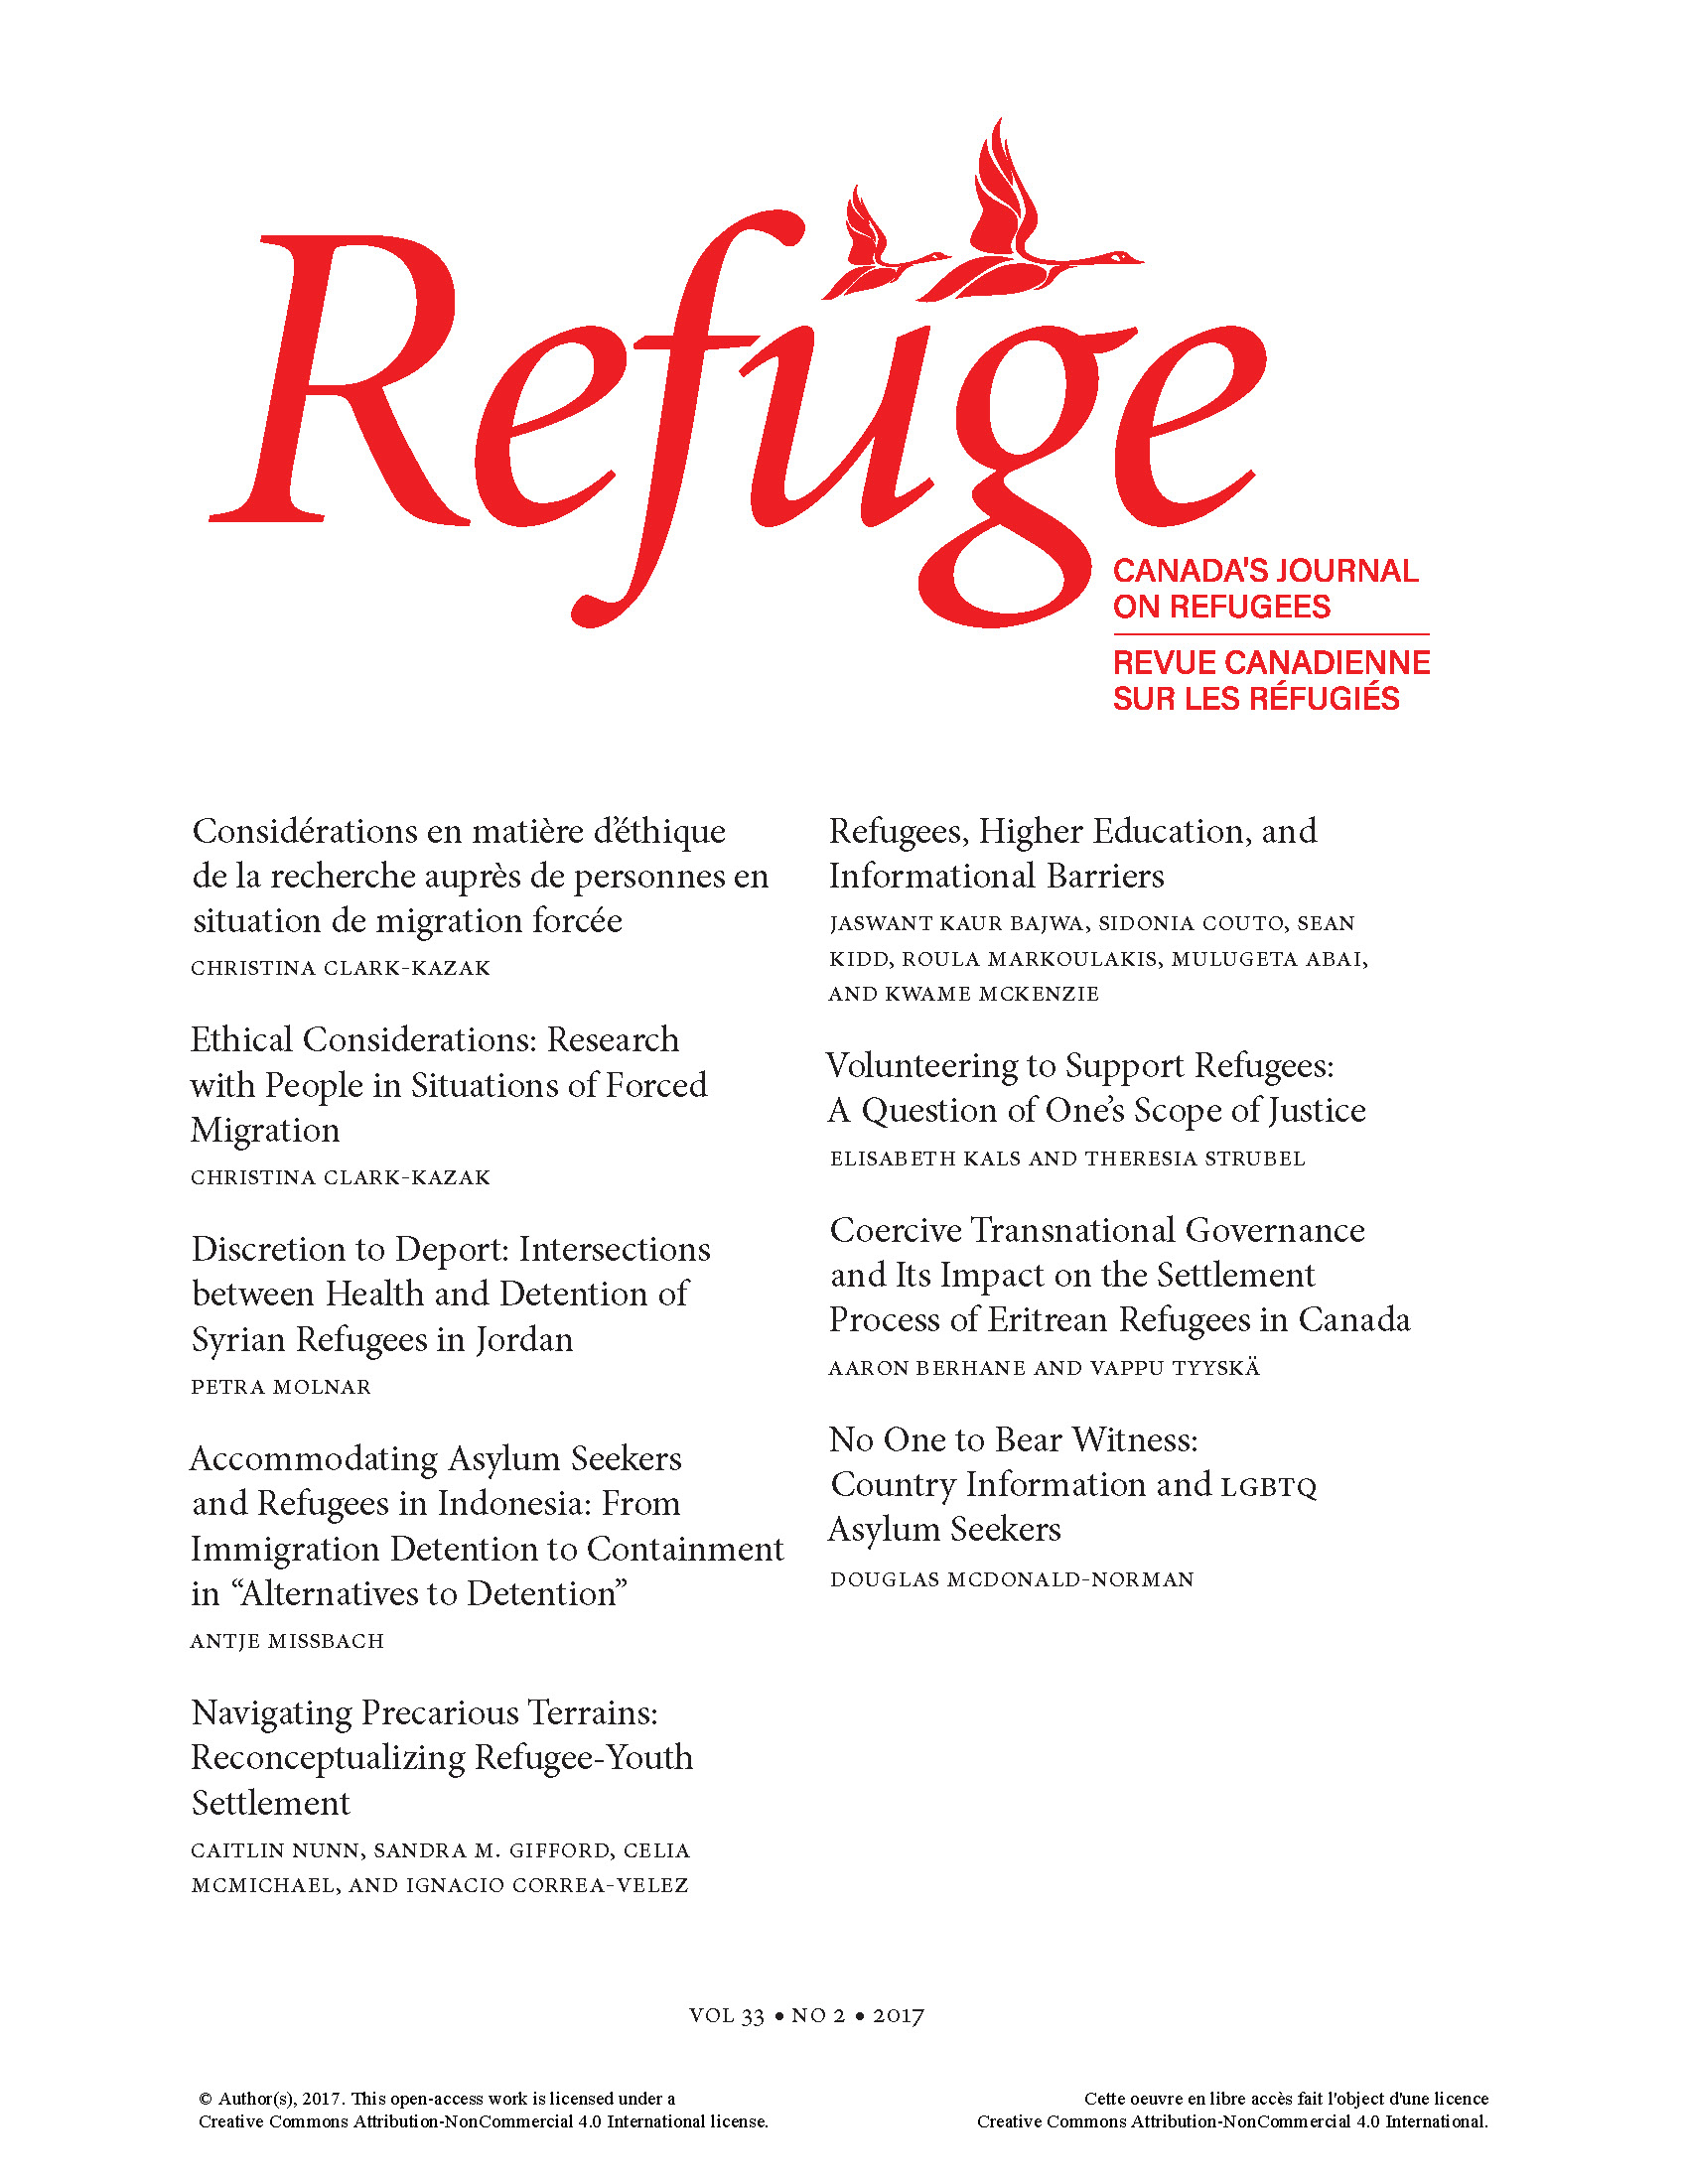 cover Refuge 33.2 2017